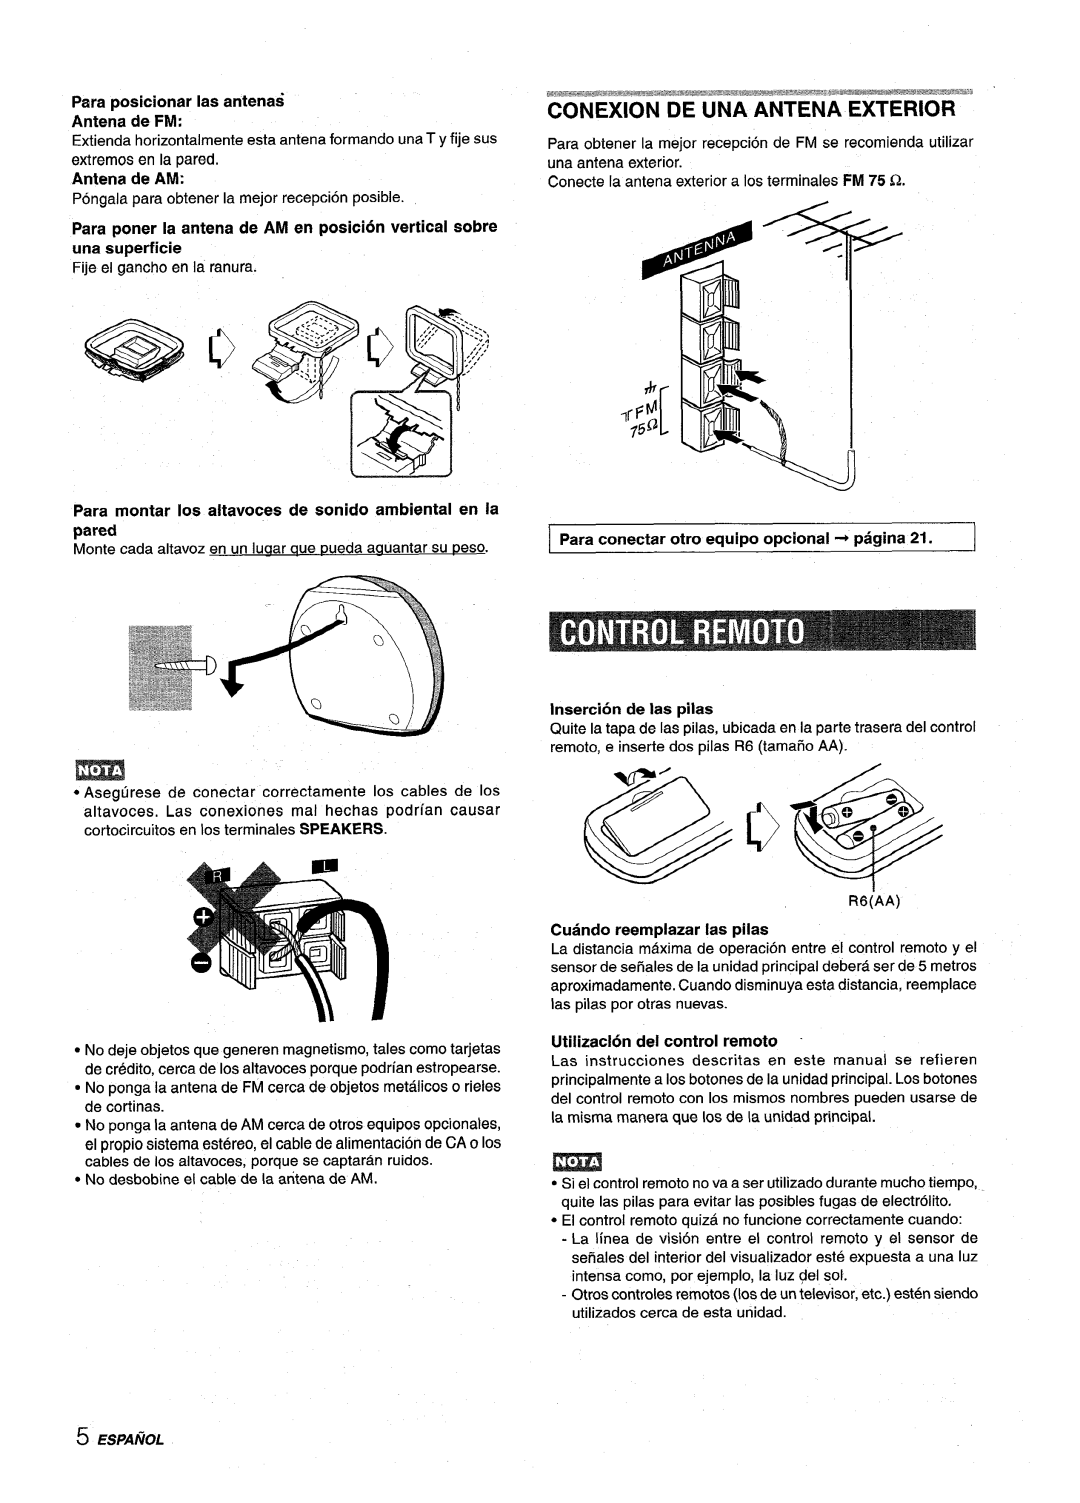 Sony NSX-MT320 manual Cuando reemplazar Ias piias, Utilizaclon del control remoto, Para posicionar Ias antenas Antena de FM 